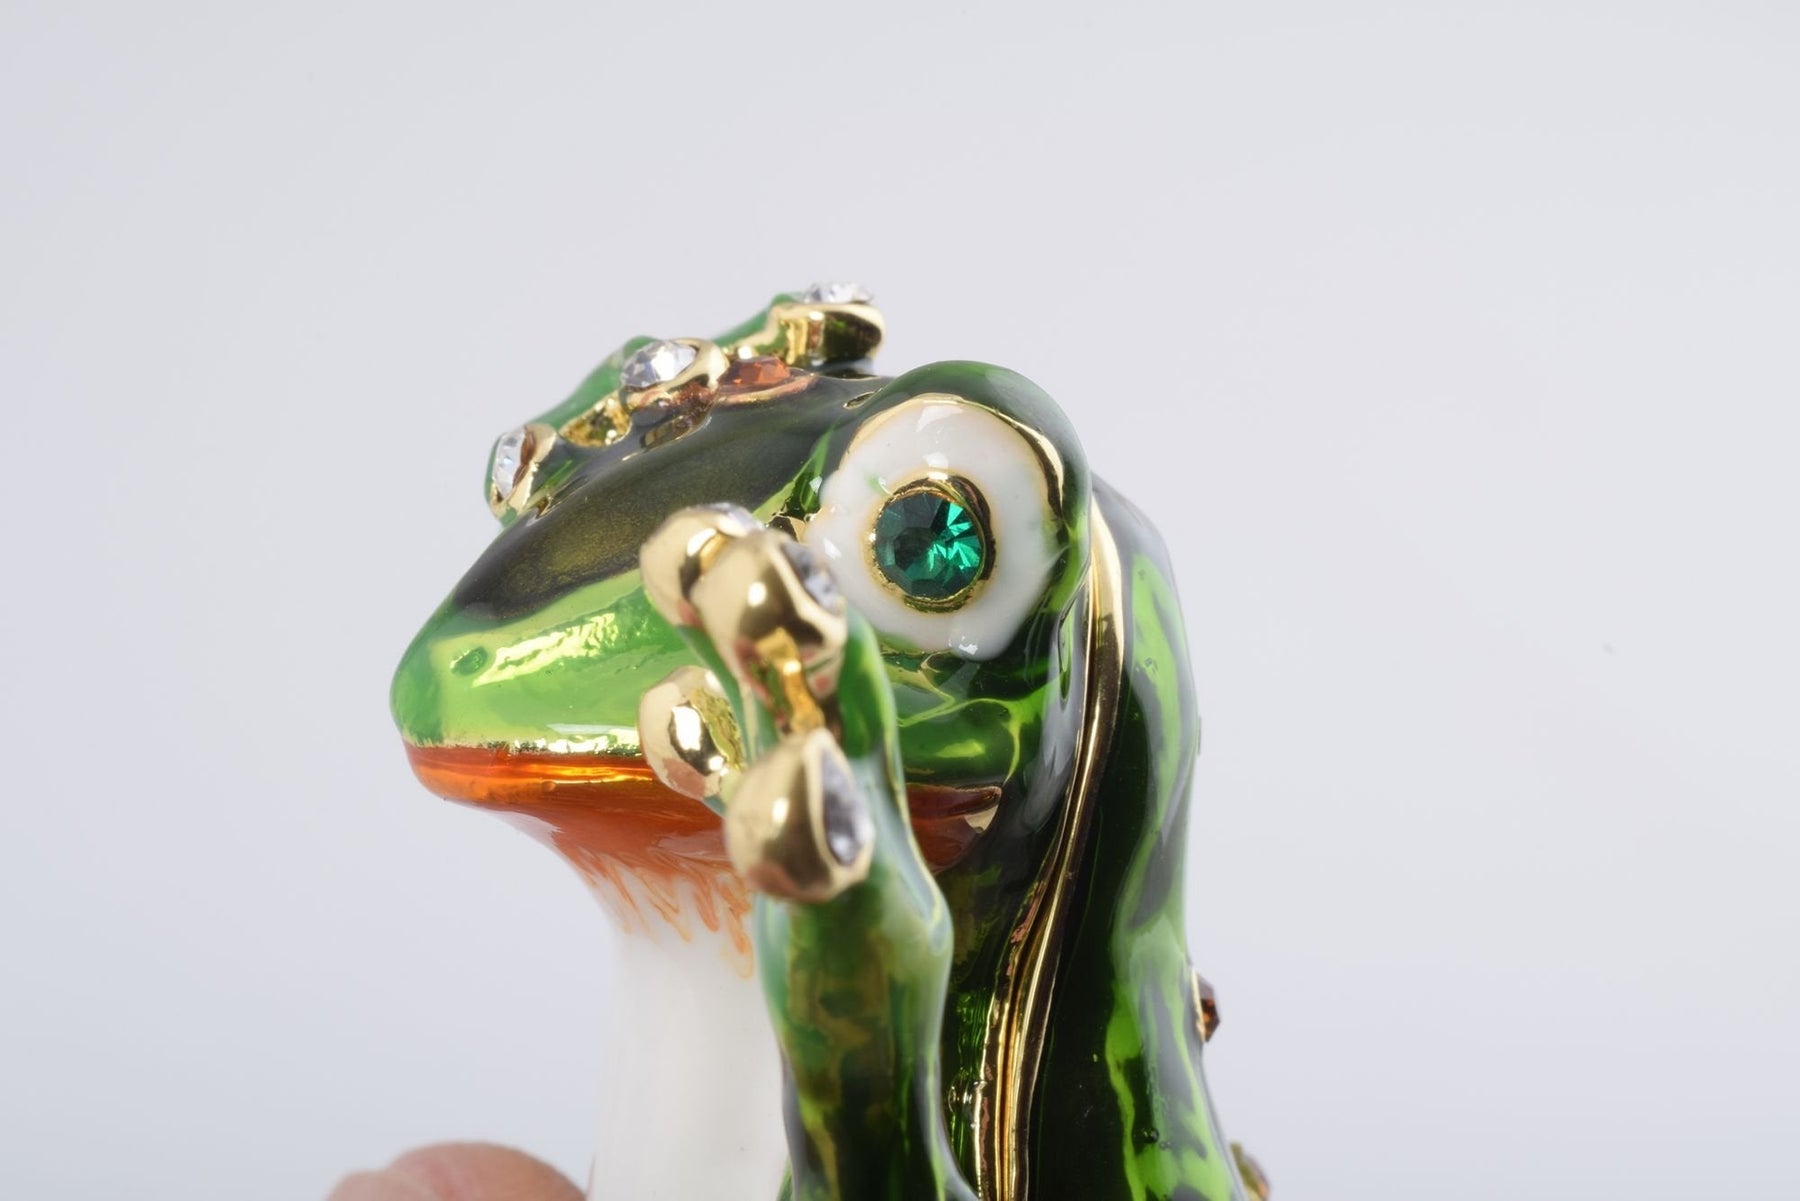 Keren Kopal Green Frog See No Evil  61.75